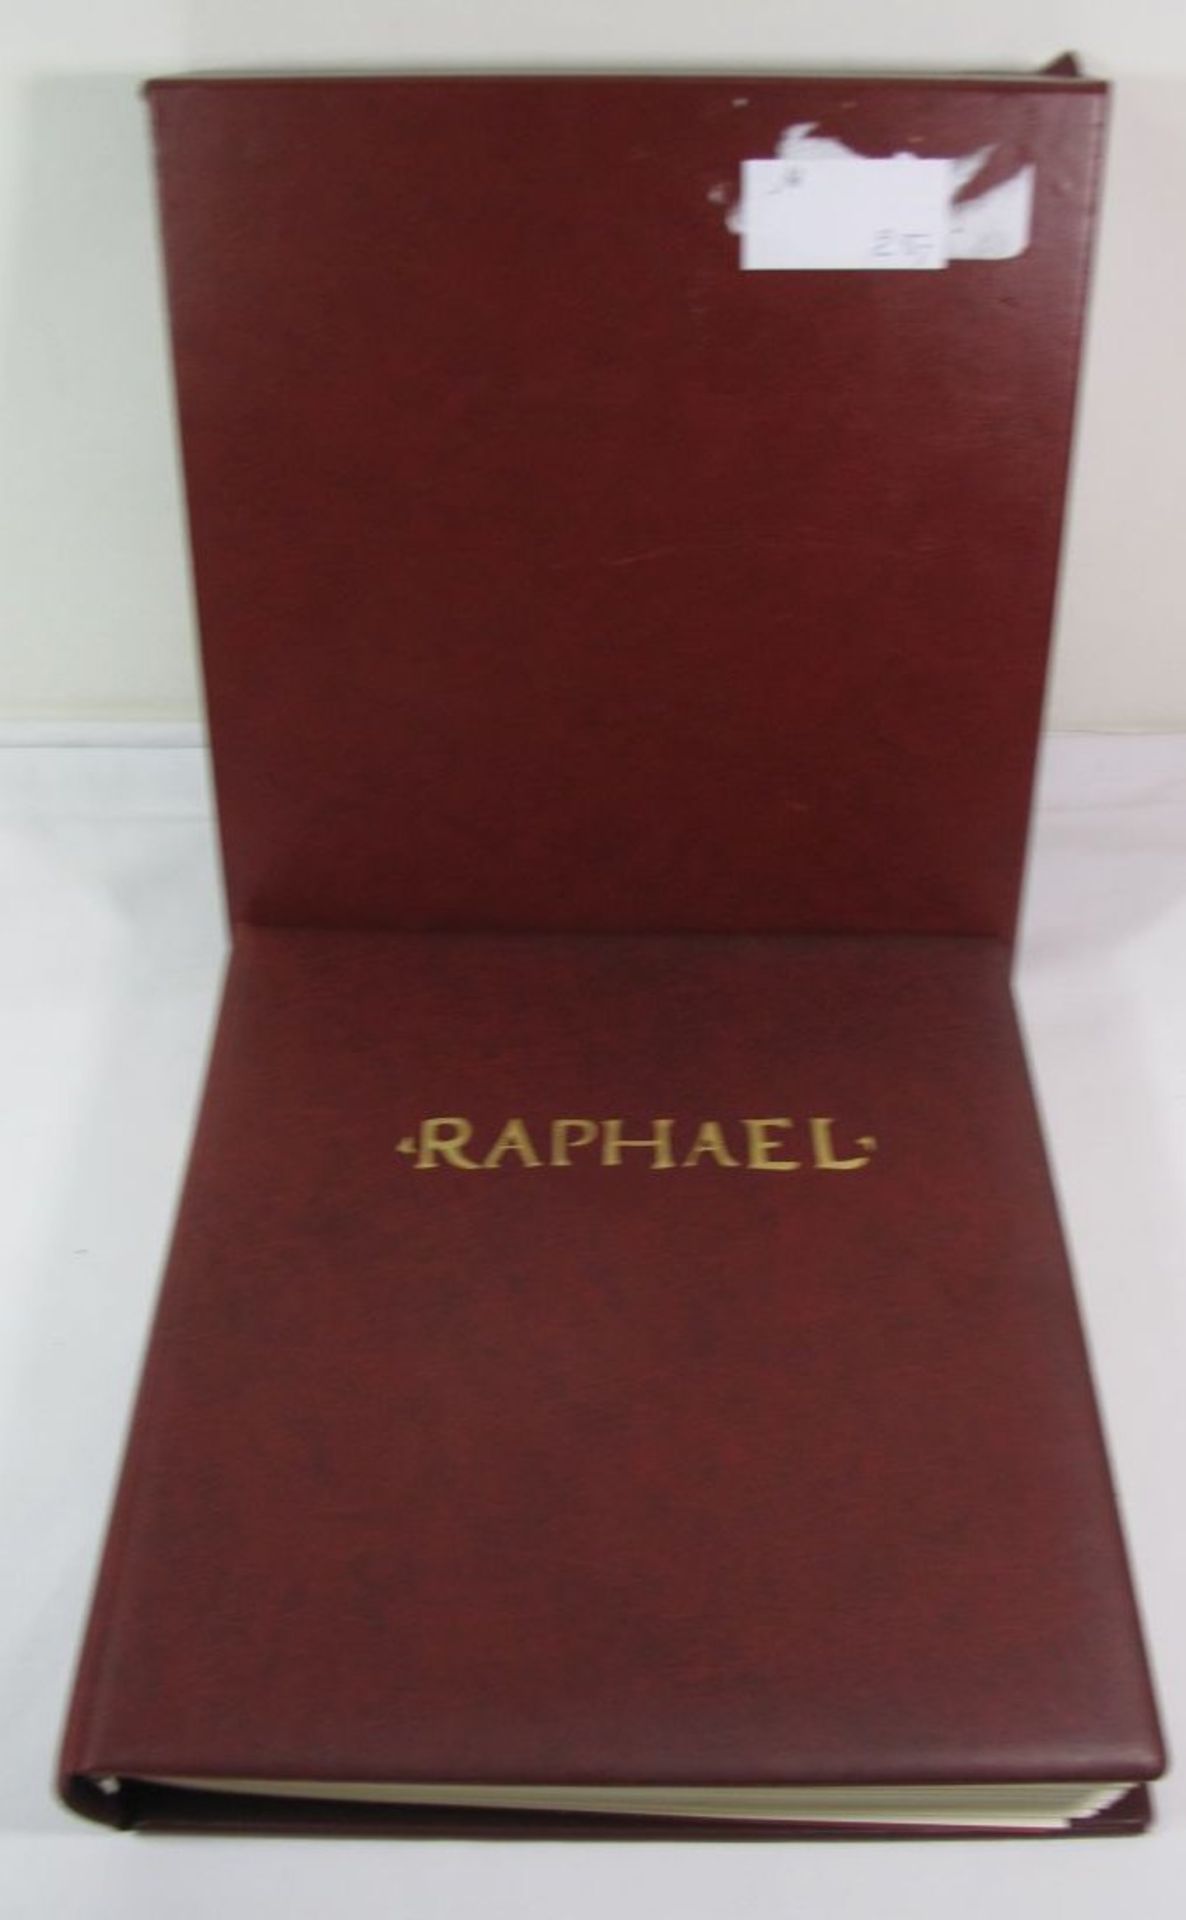 Album "Raphael".